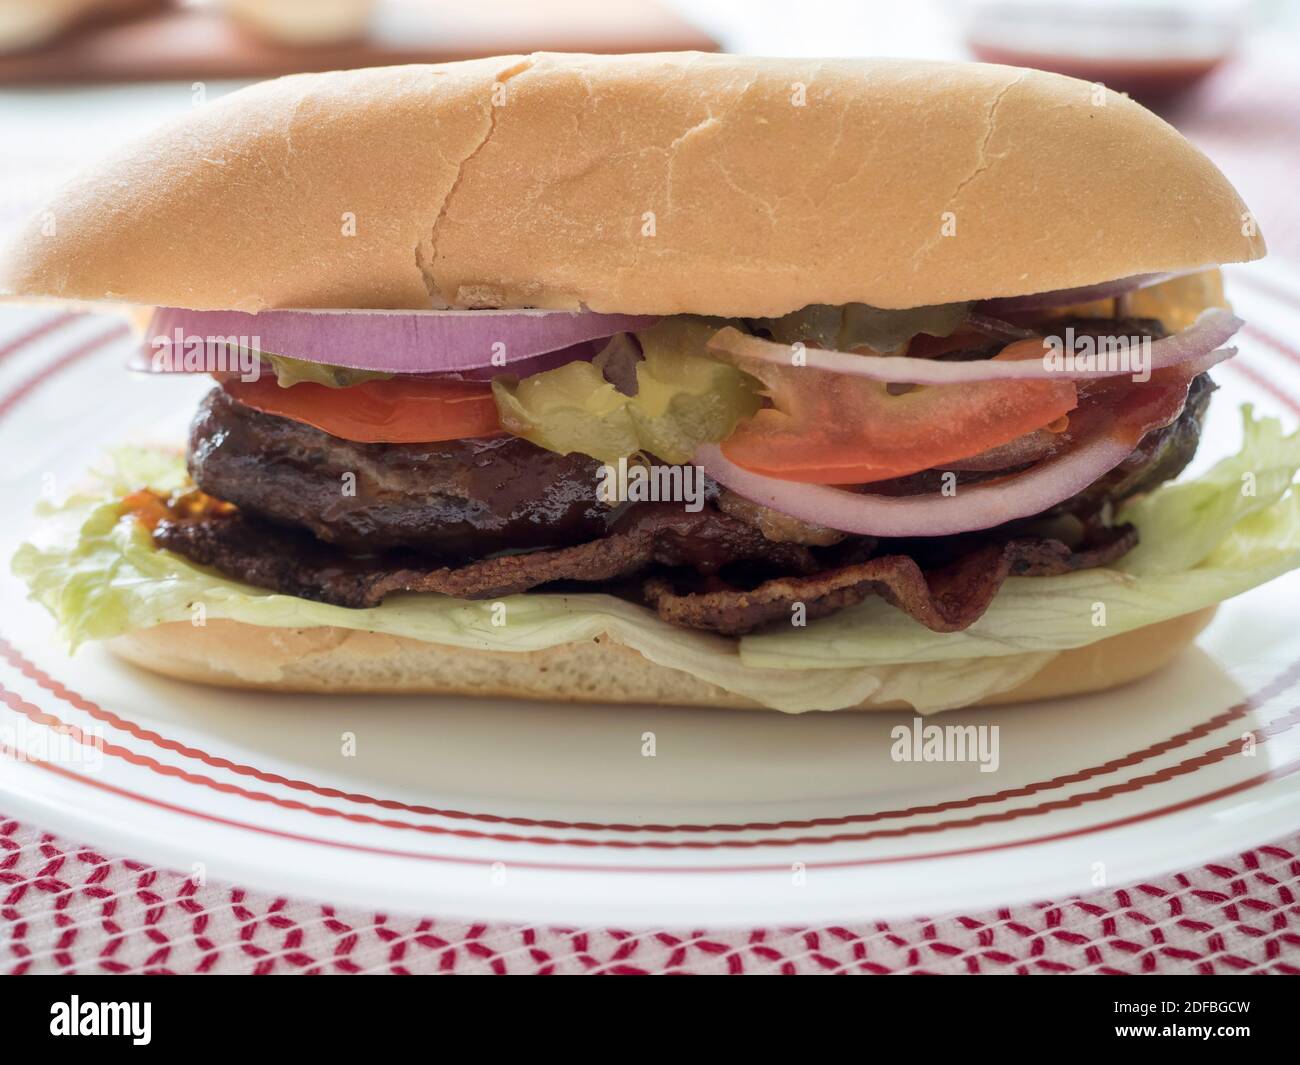 Gros plan directement sur la vue d'un cheeseburger farci sur un pain de cagoule, recouvert de légumes et de sauce, également connu sous le nom de lucy juteuse Banque D'Images